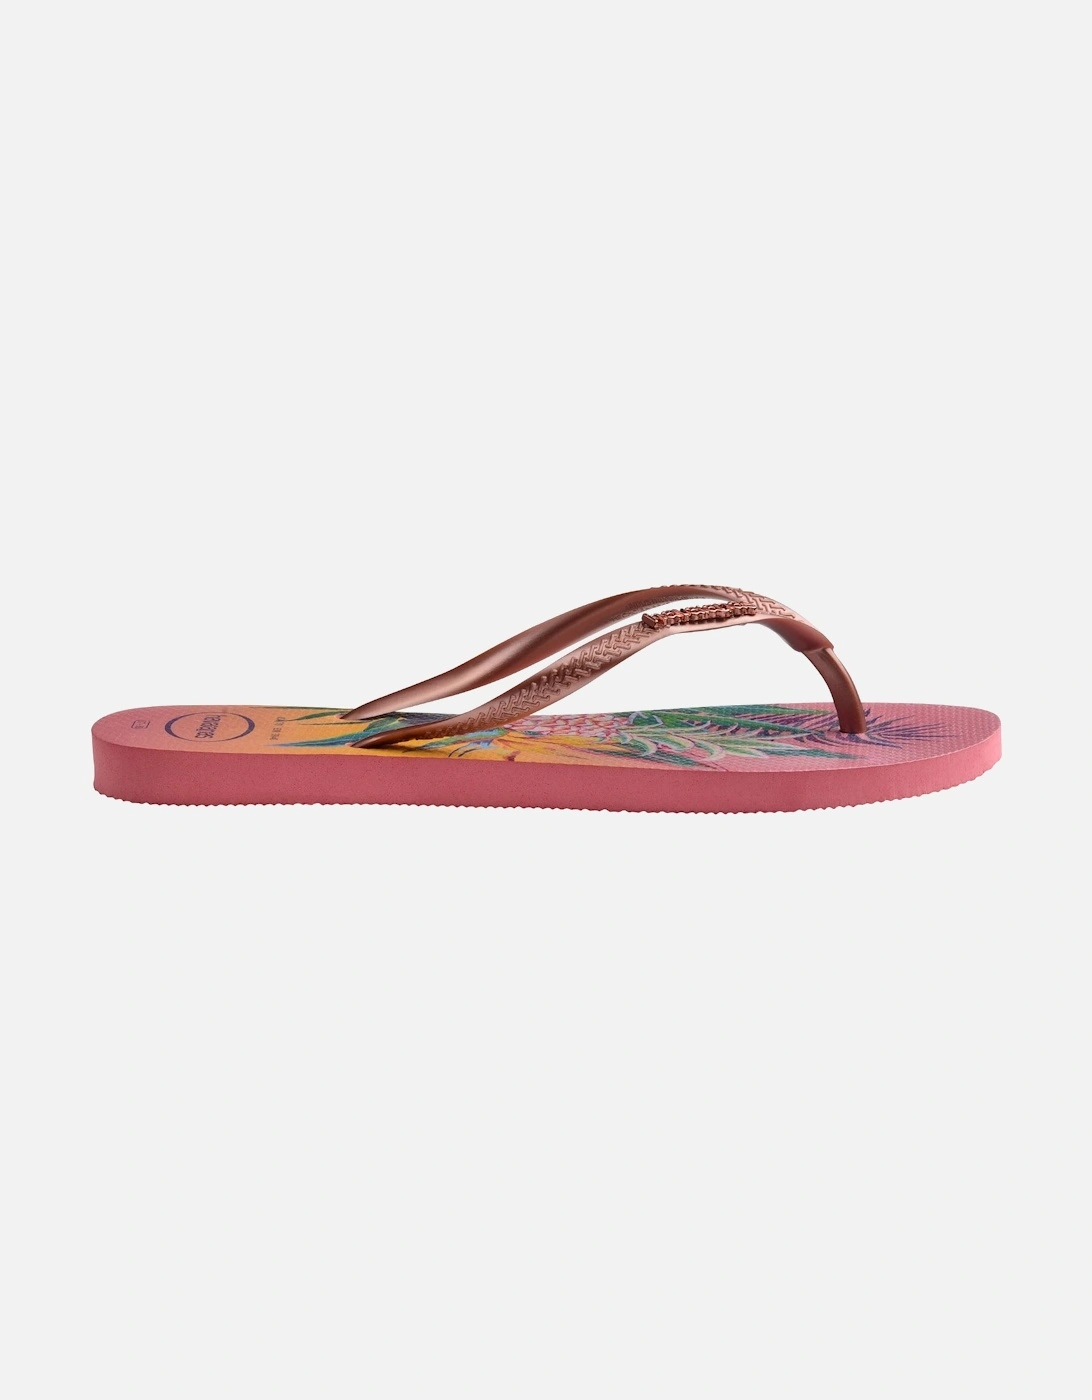 Slim Tropical Flip Flops - Pink Porcelin - 6/7 UK